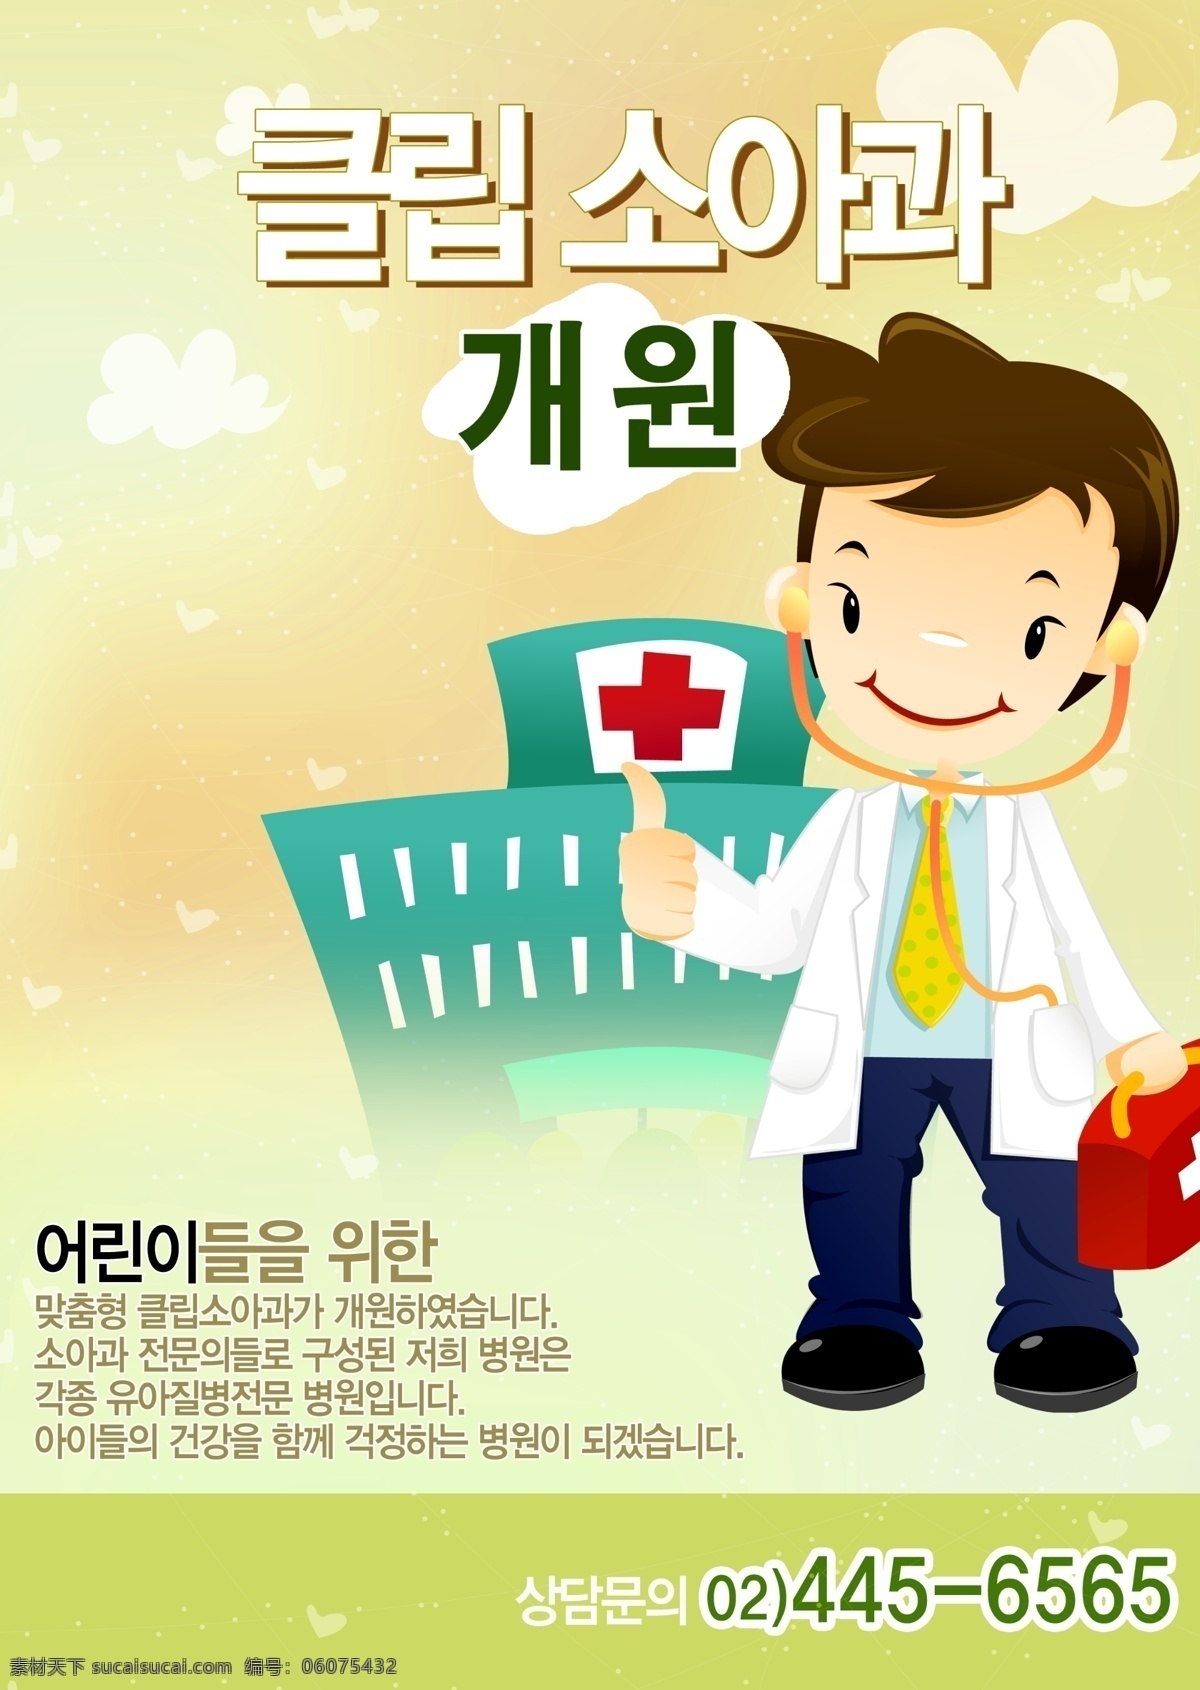 韩语 医院 韩国医院 医院海报设计 广告 模板 海报 展板 广告模板 广告展板设计 广告设计模板 psd素材 白色